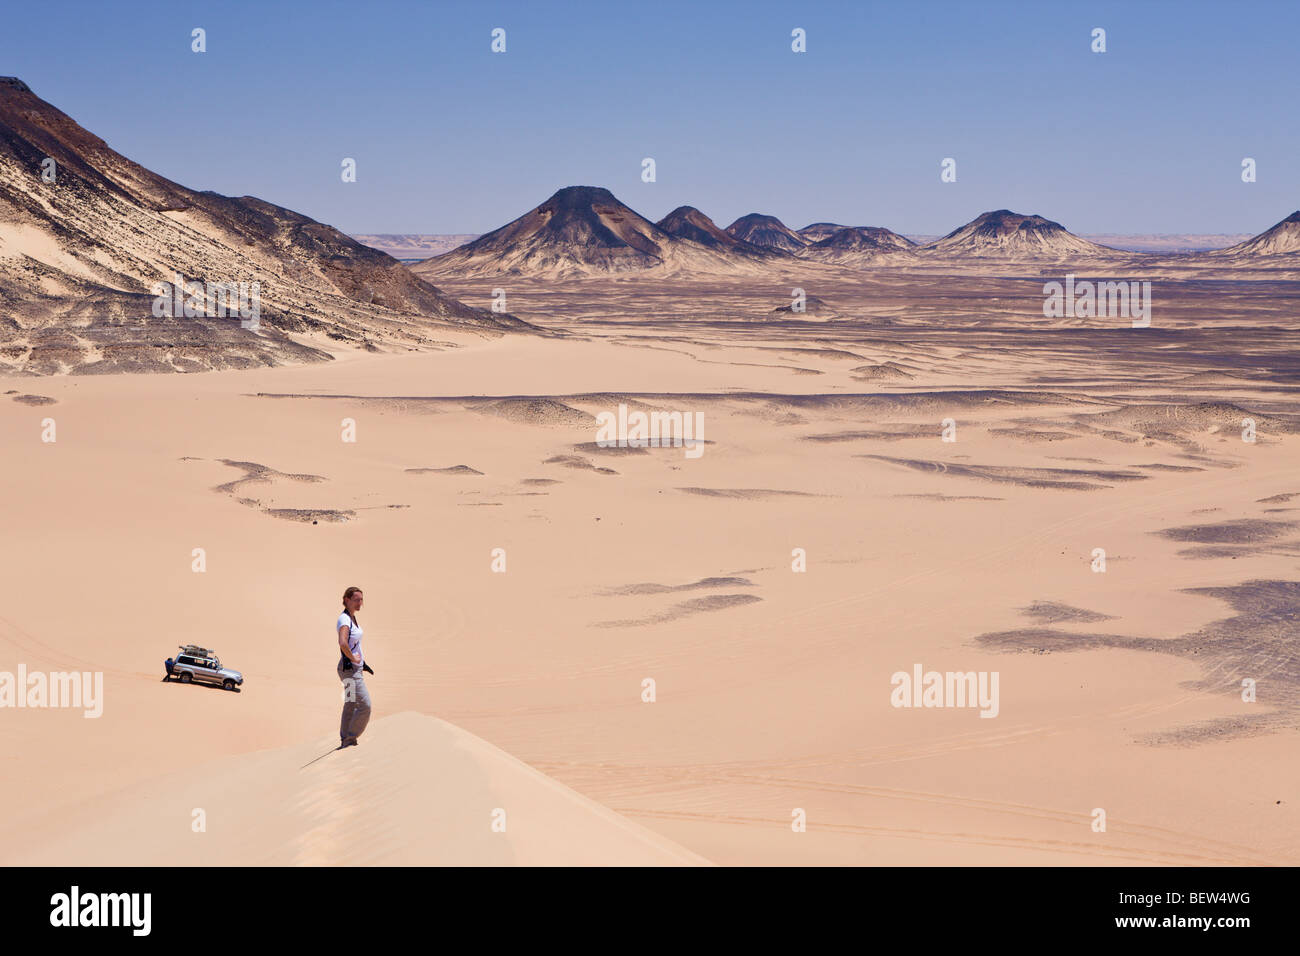 Tourist on 50-Meter Dune in Black Desert, Libyan Desert, Egypt Stock Photo